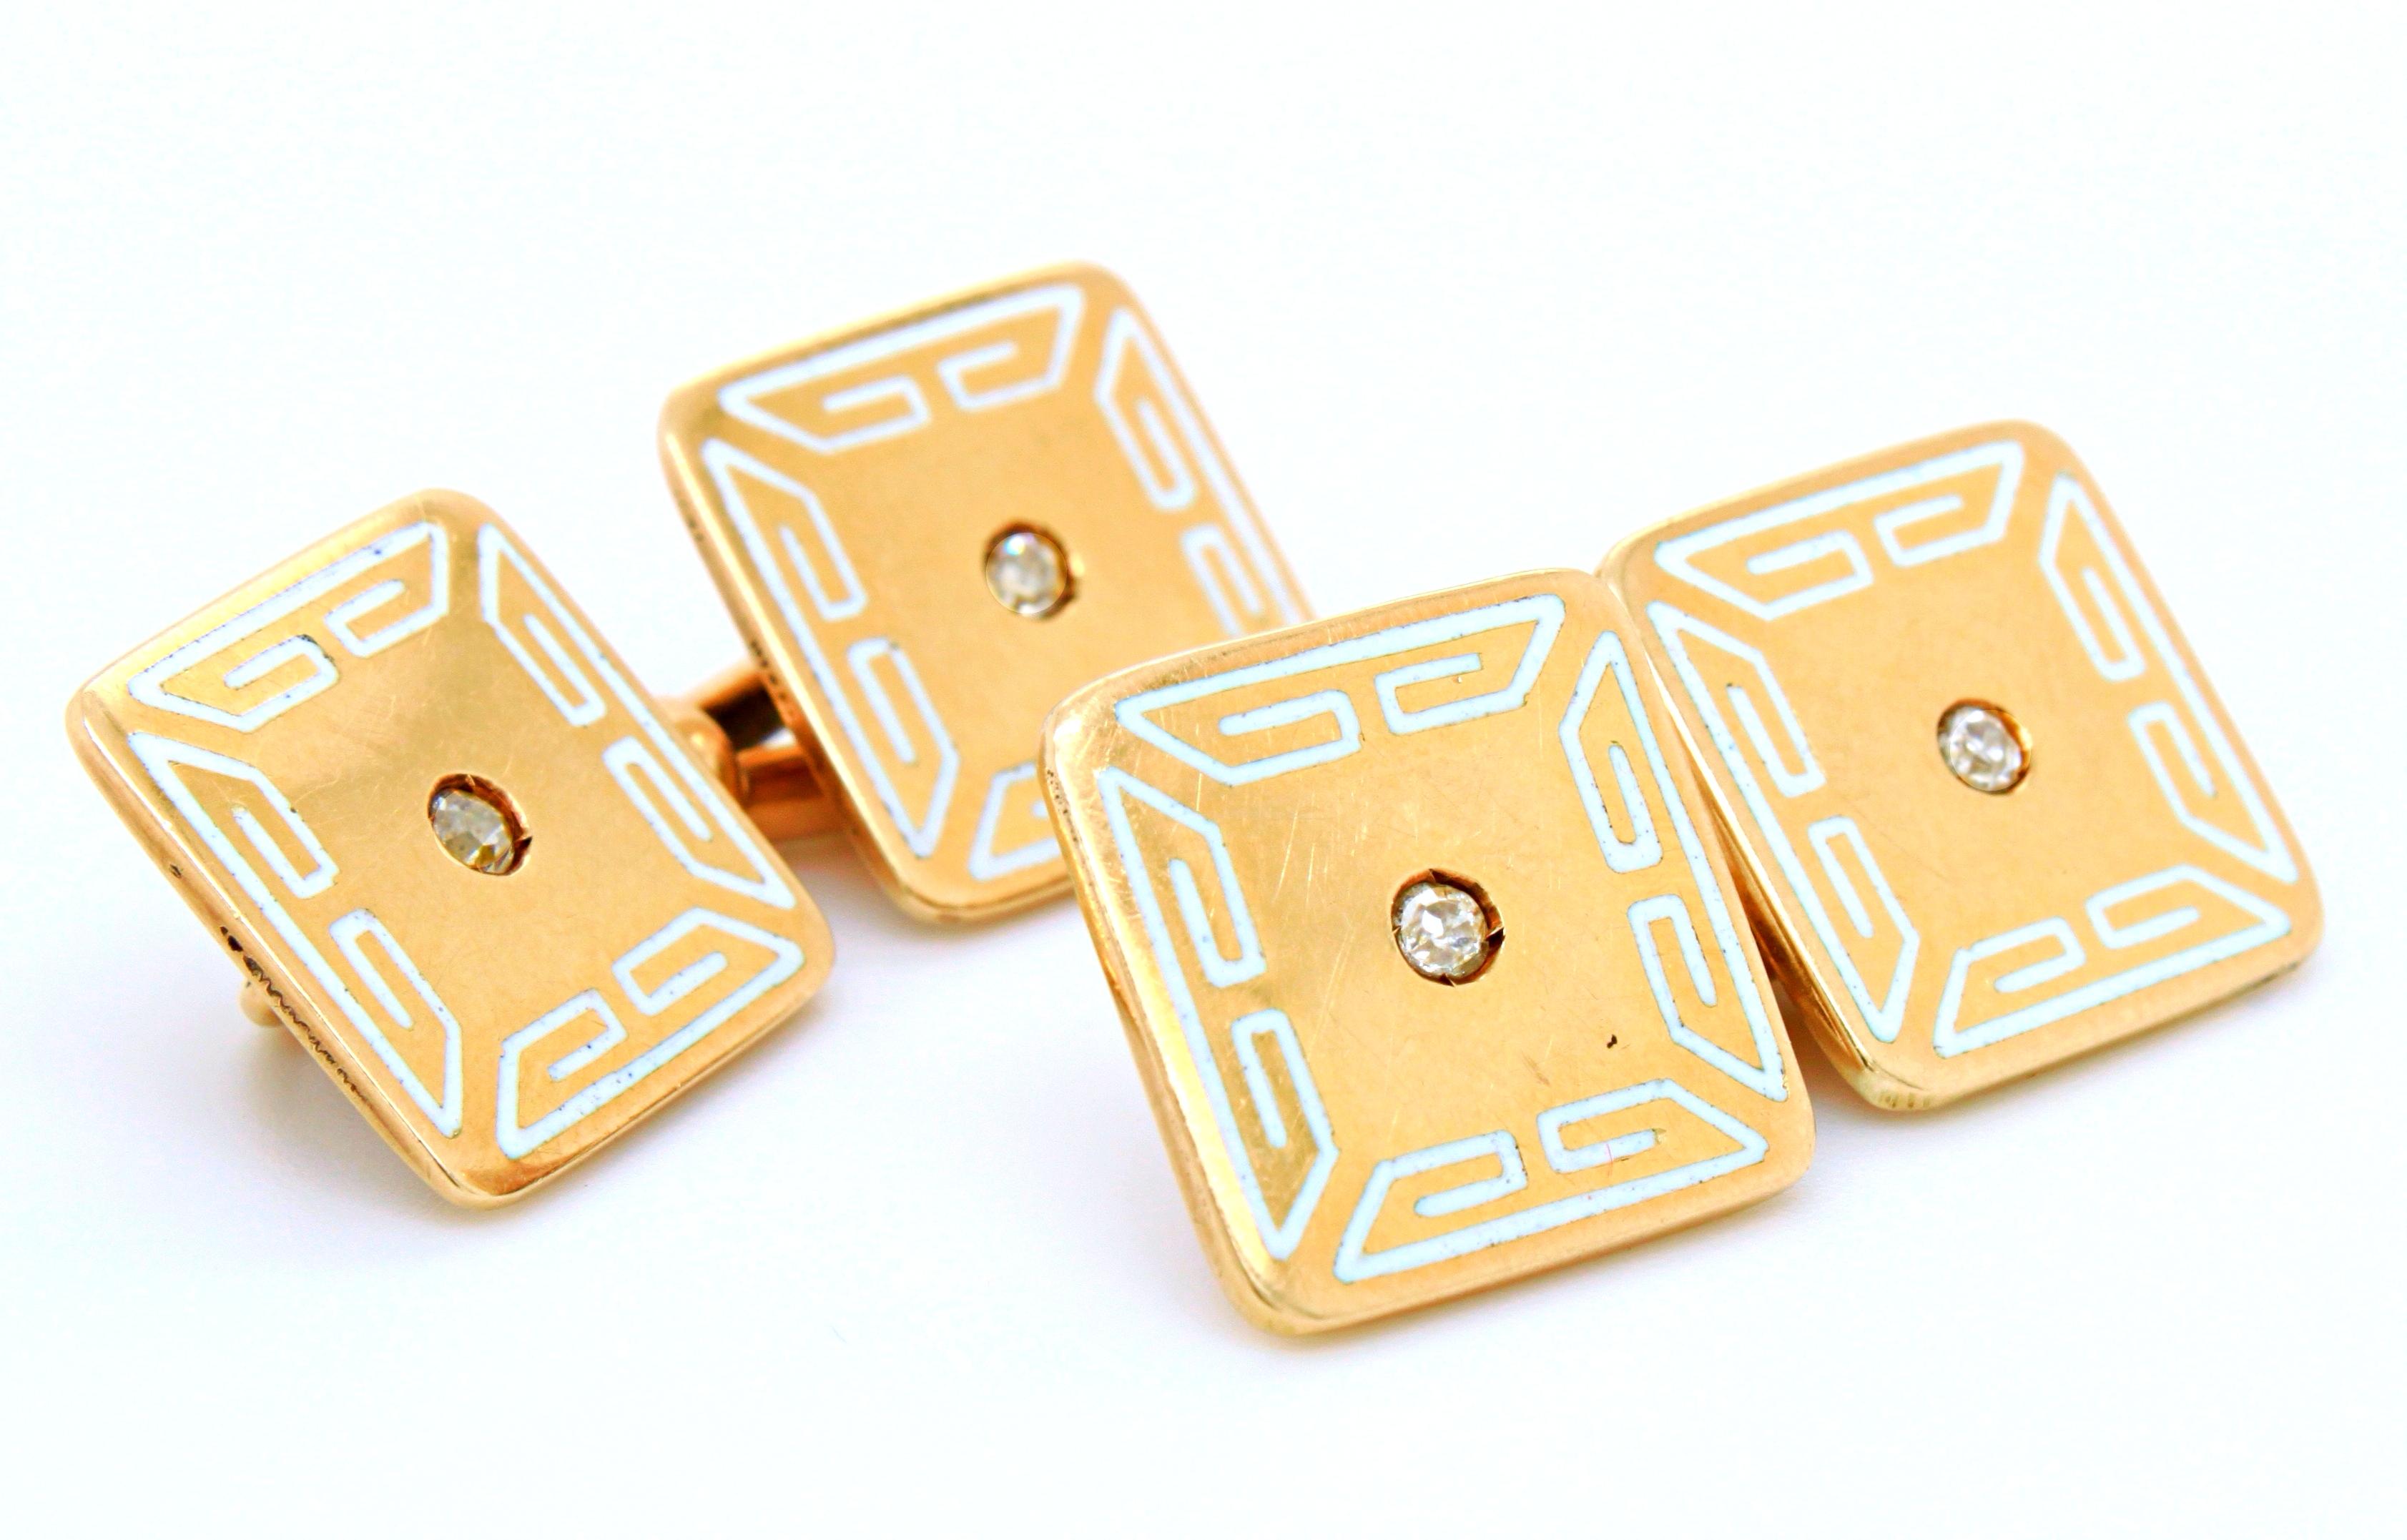 Art Deco Paar Manschettenknöpfe aus weißem Email, Diamanten und Gold, ca. 1920er Jahre. Sie sind quadratisch geformt, mit einem altgeschliffenen Diamanten in der Mitte und einer geometrischen weißen Emailleumrandung - inspiriert von der ägyptischen